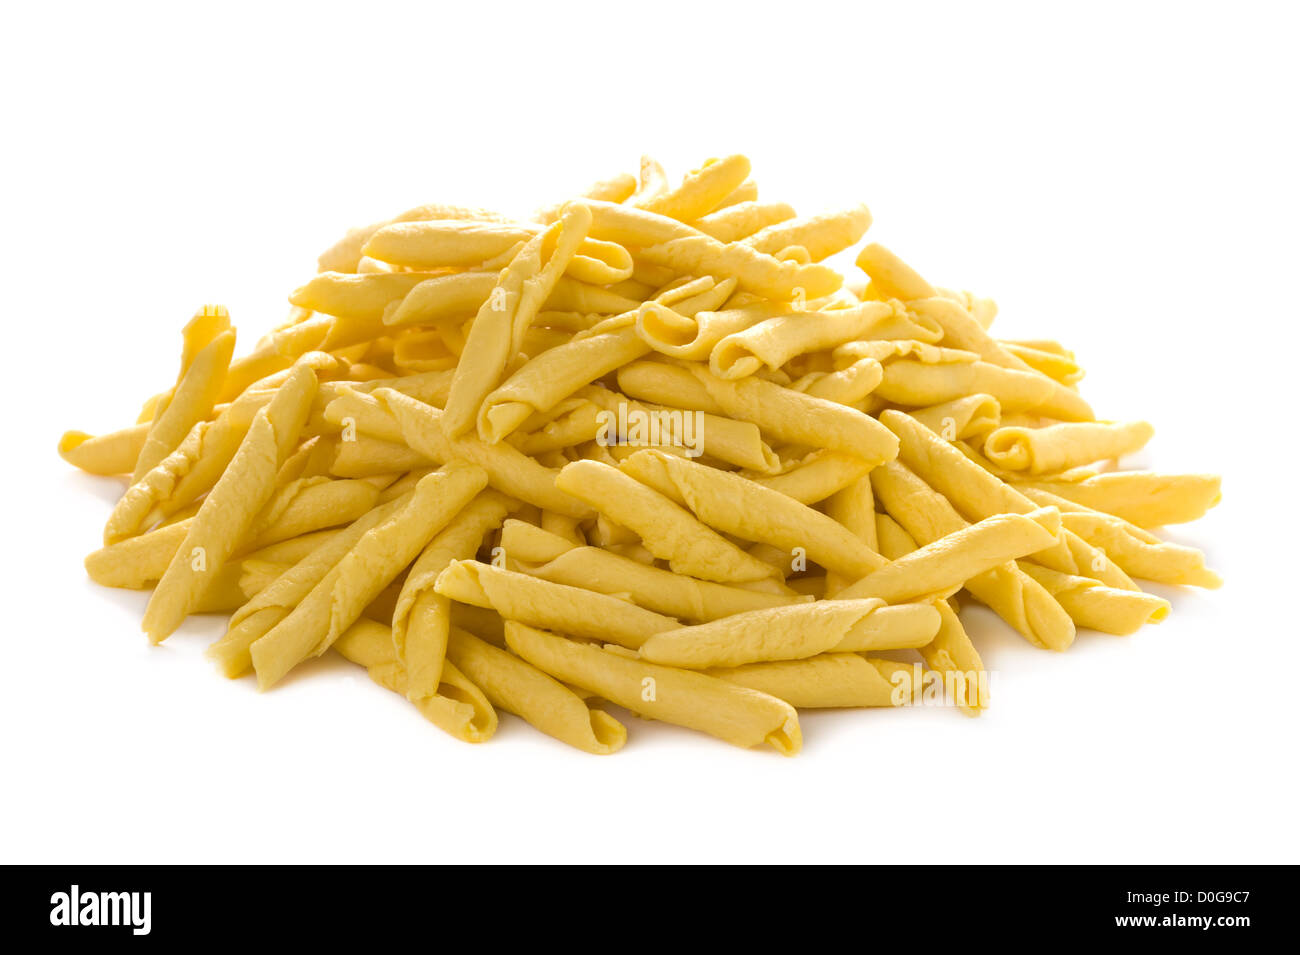 strozzapreti pasta heap isolated on a white background Stock Photo